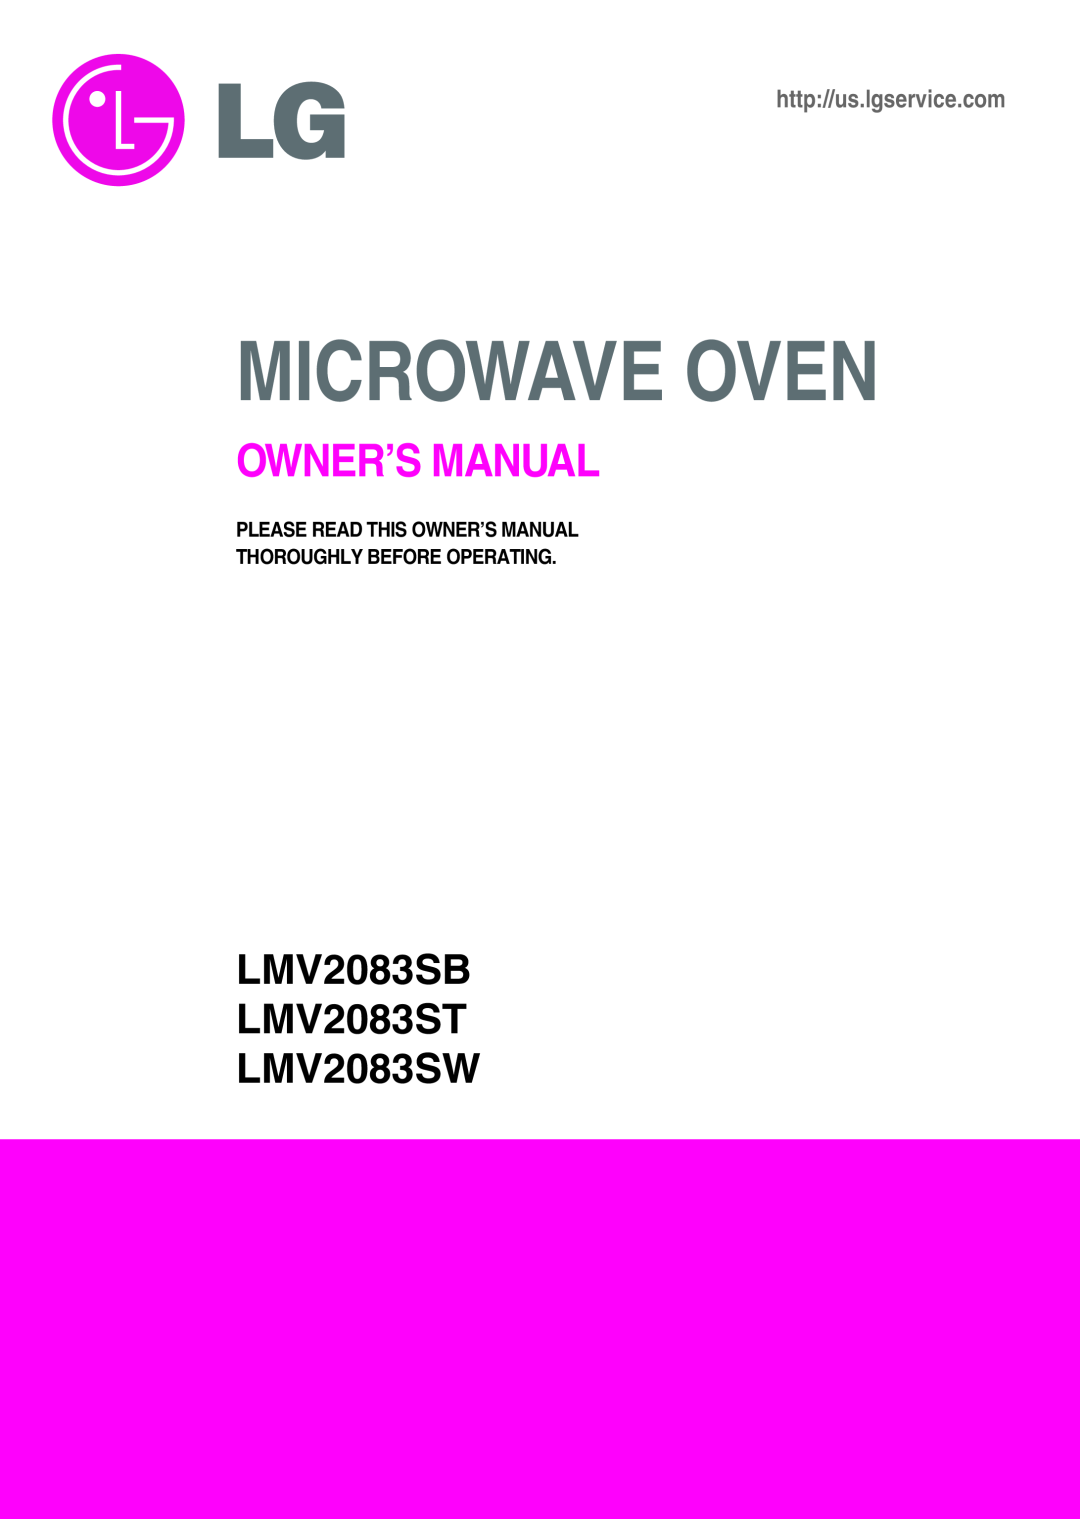 LG Electronics owner manual LMV2083SB LMV2083ST LMV2083SW, Microwave Oven, http//us.lgservice.com 